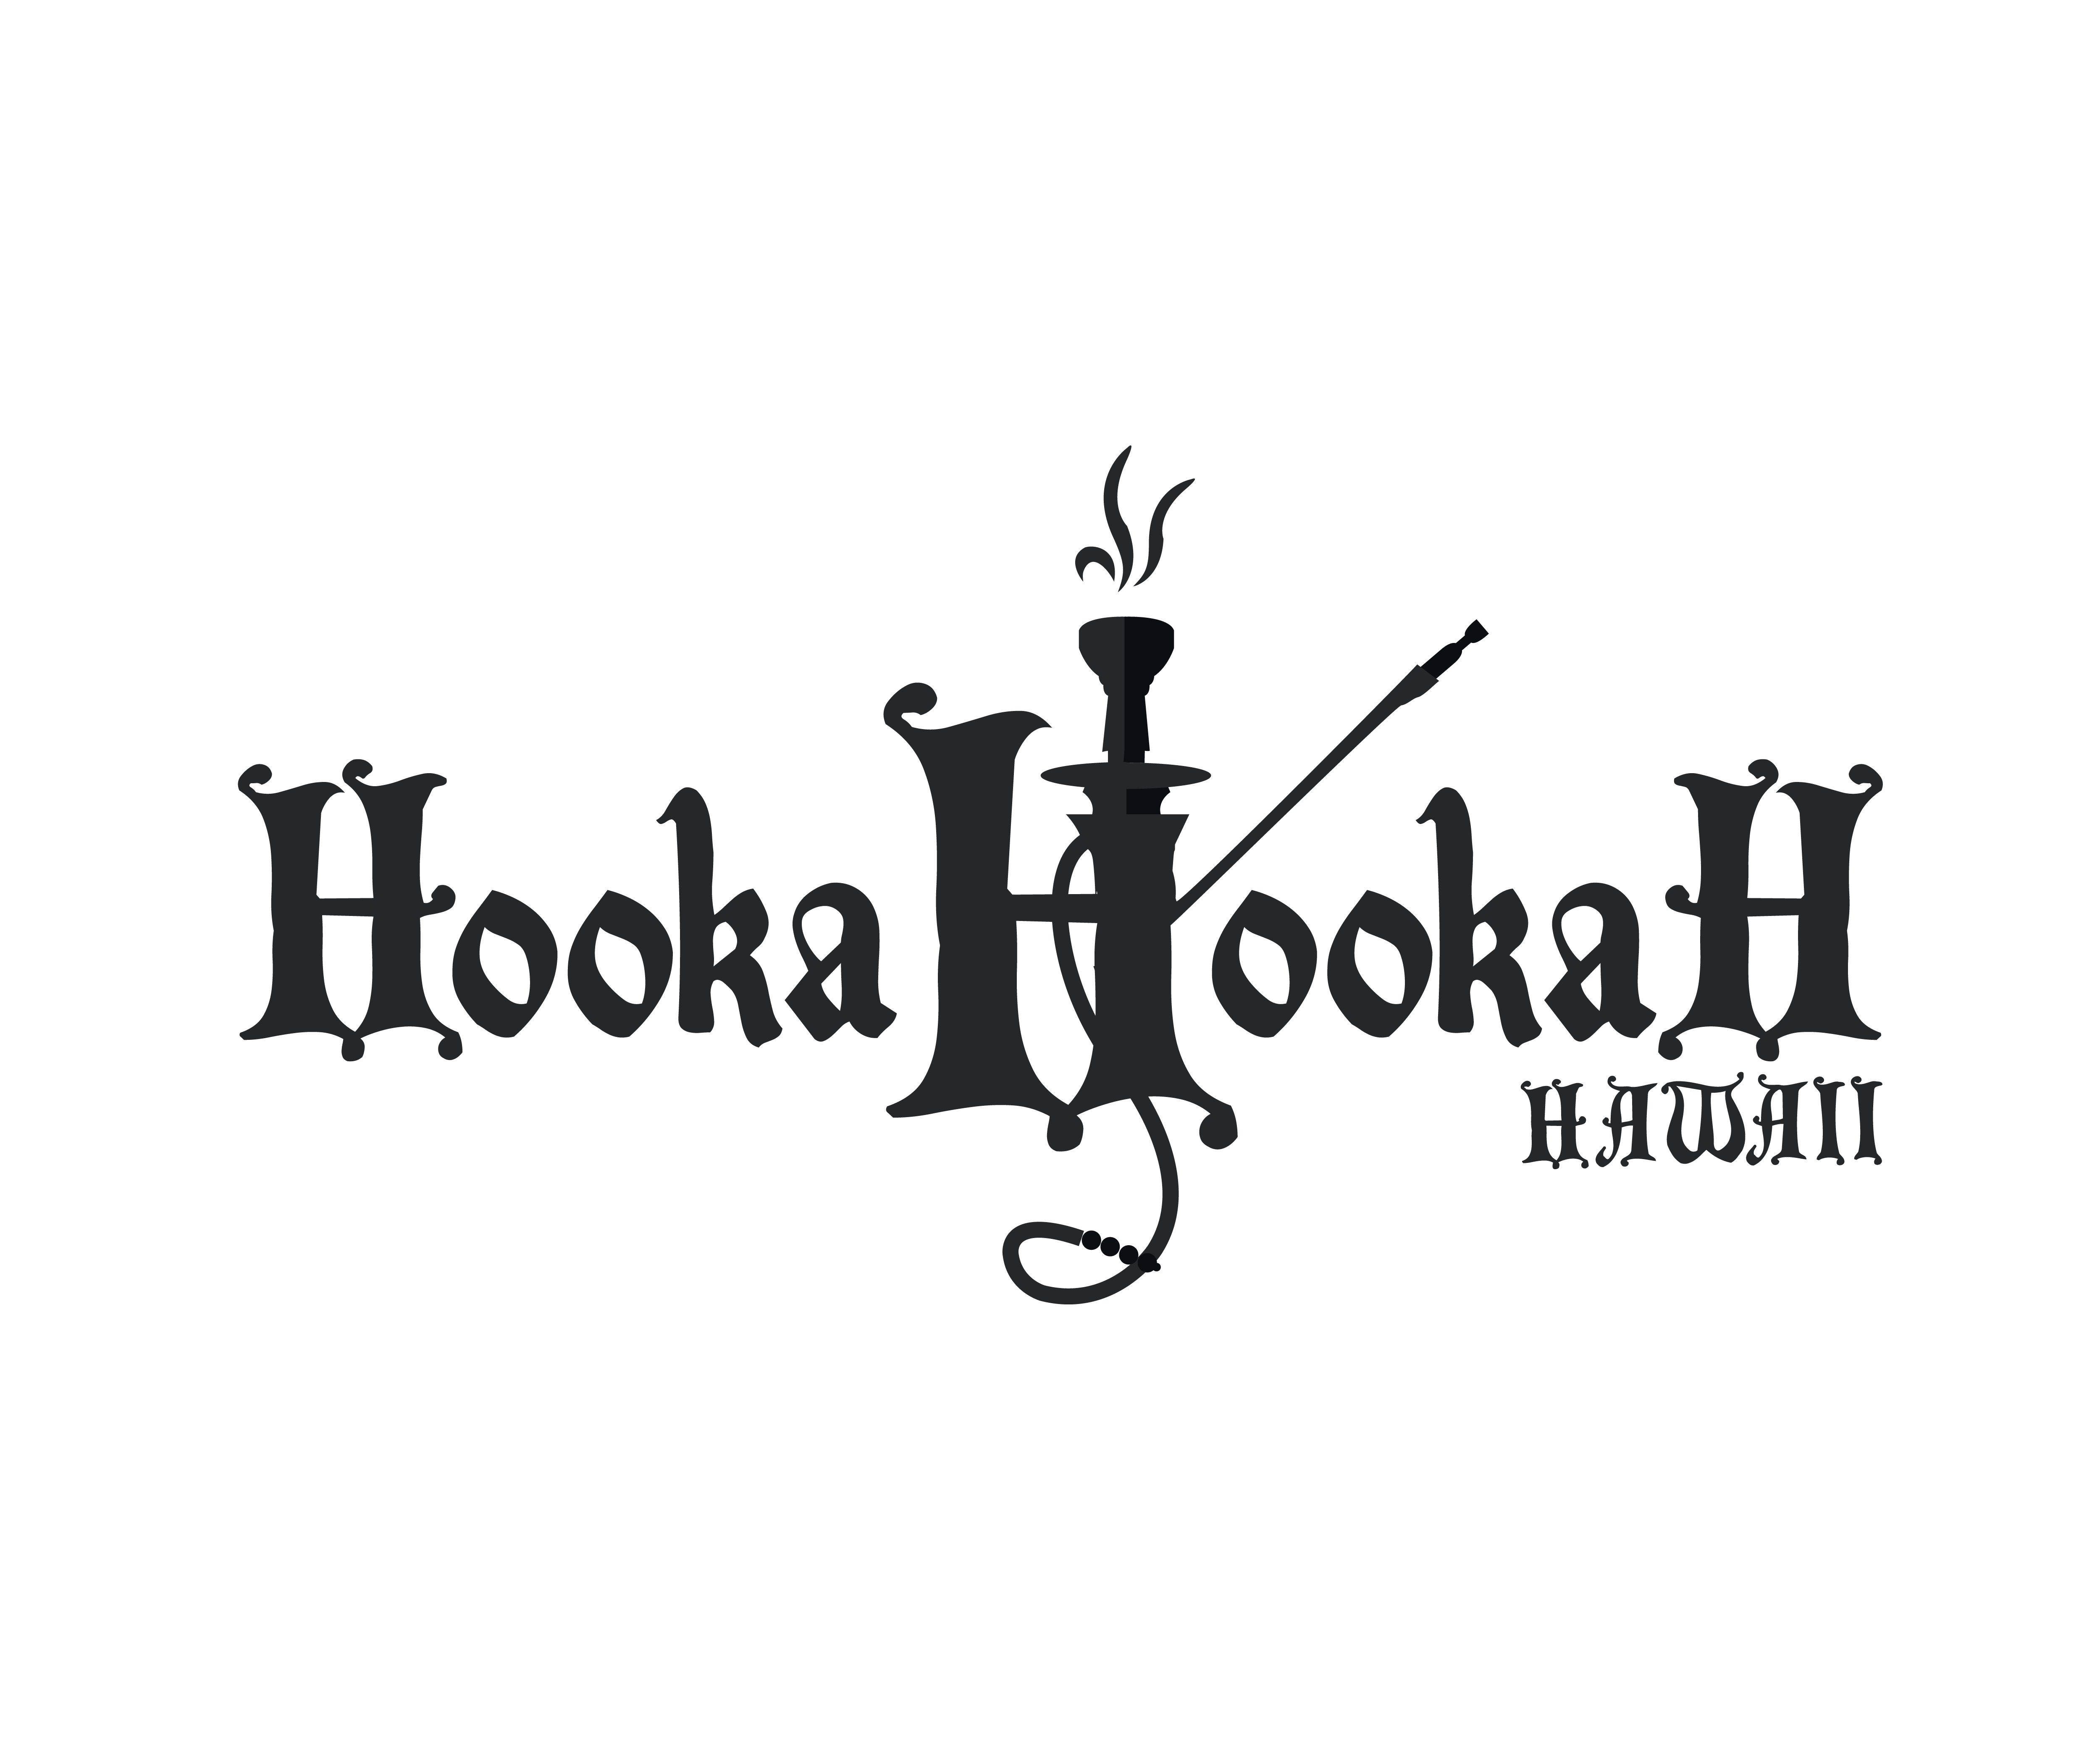 Hookahookah will entertain you!